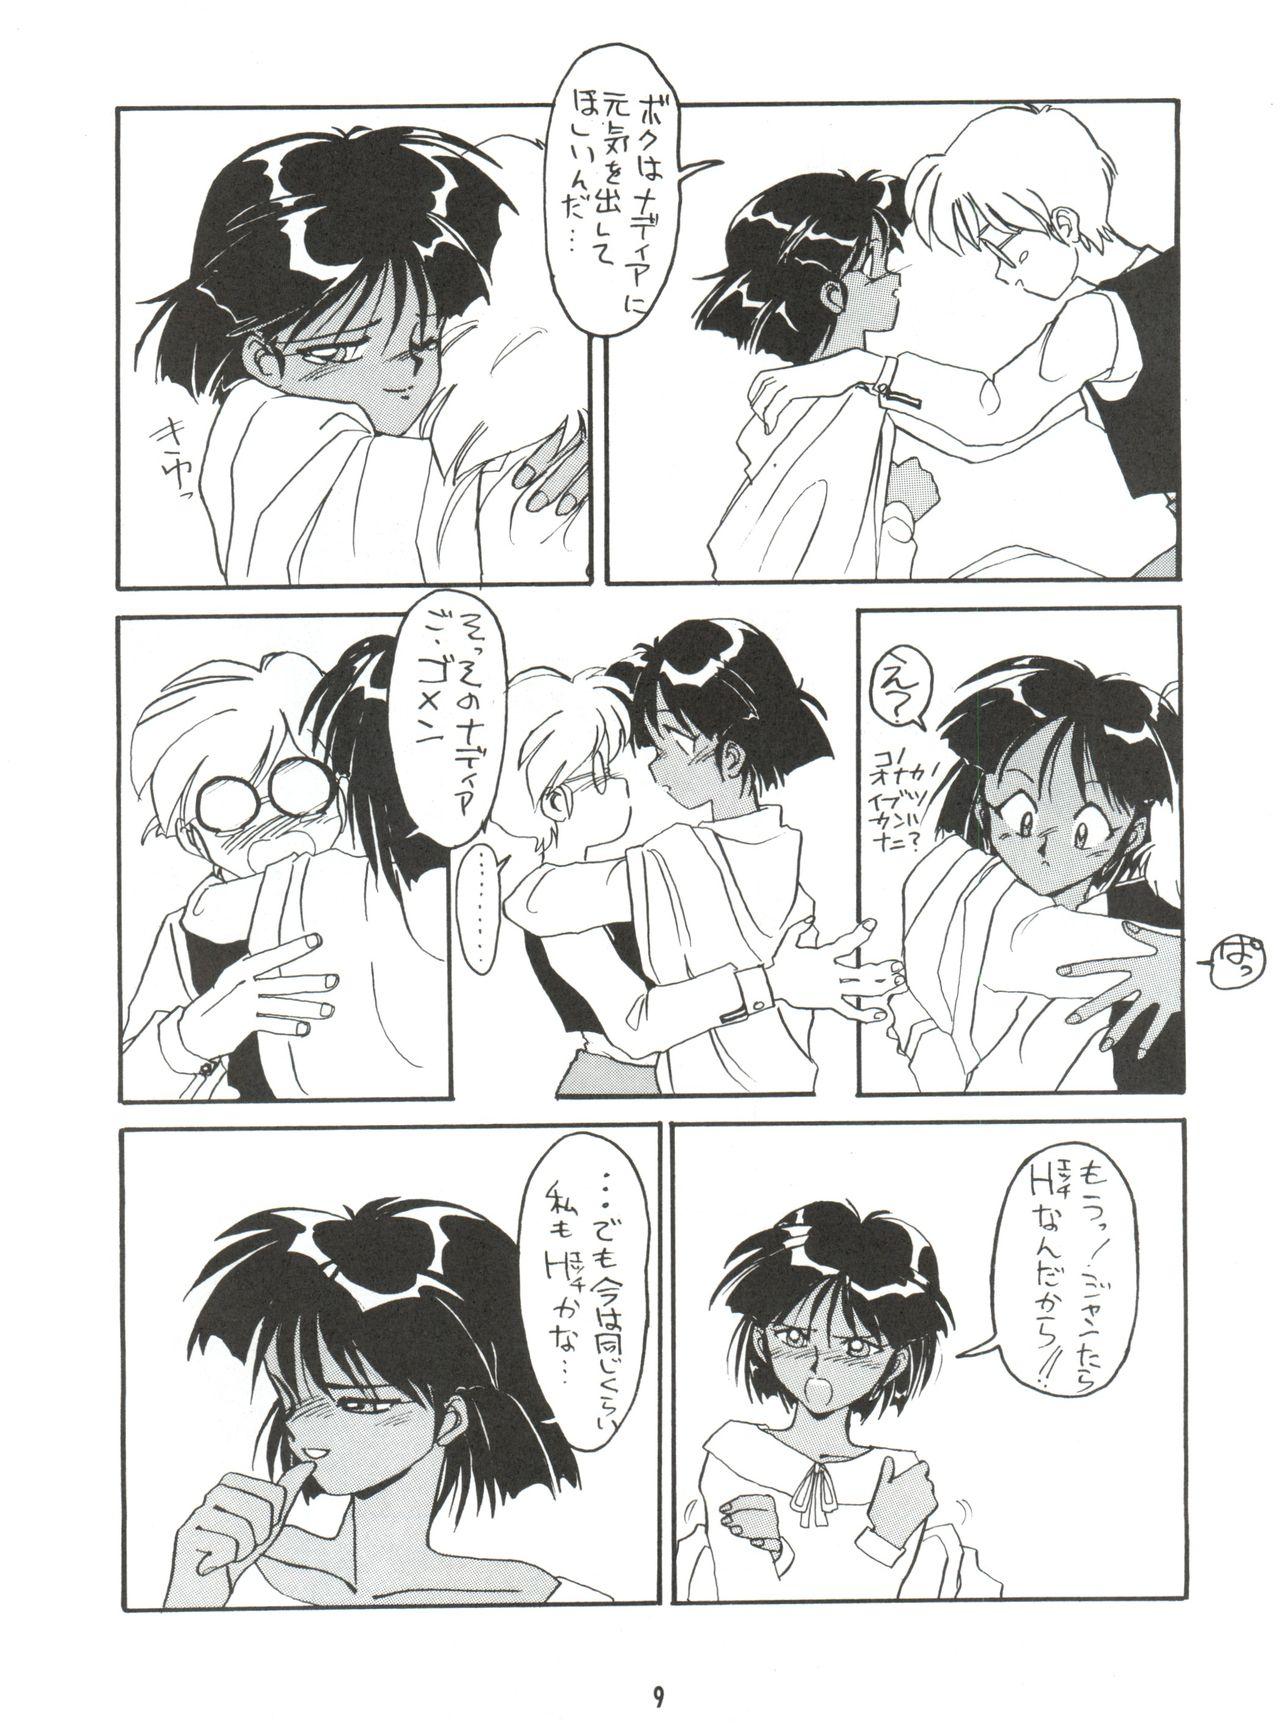 Bareback Hitotsubu no Umi 3 - Fushigi no umi no nadia Doggystyle - Page 9